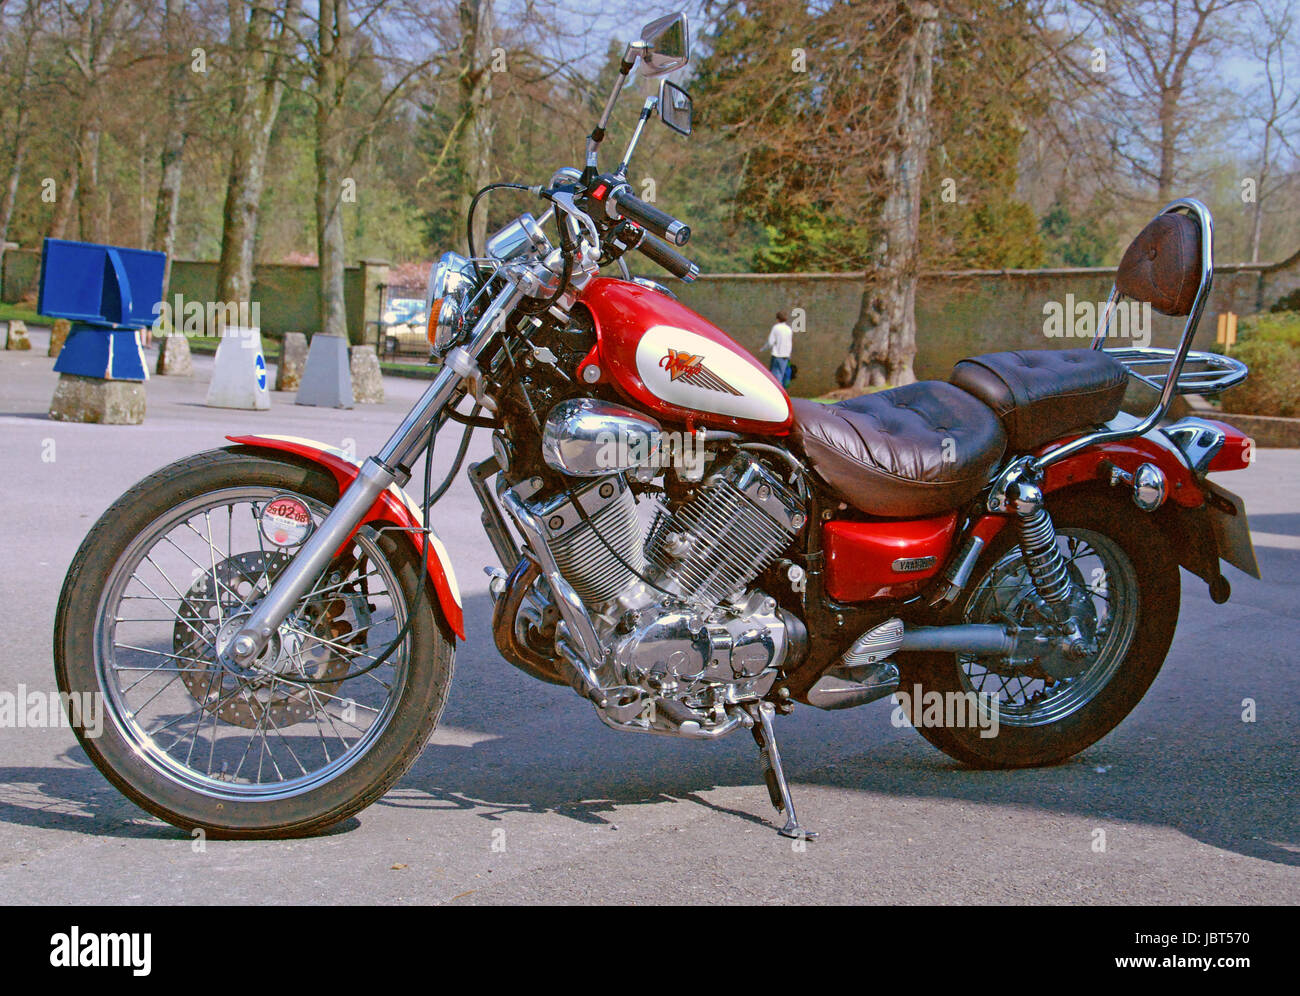 Yamaha Virago 535 motorcycle Stock Photo - Alamy